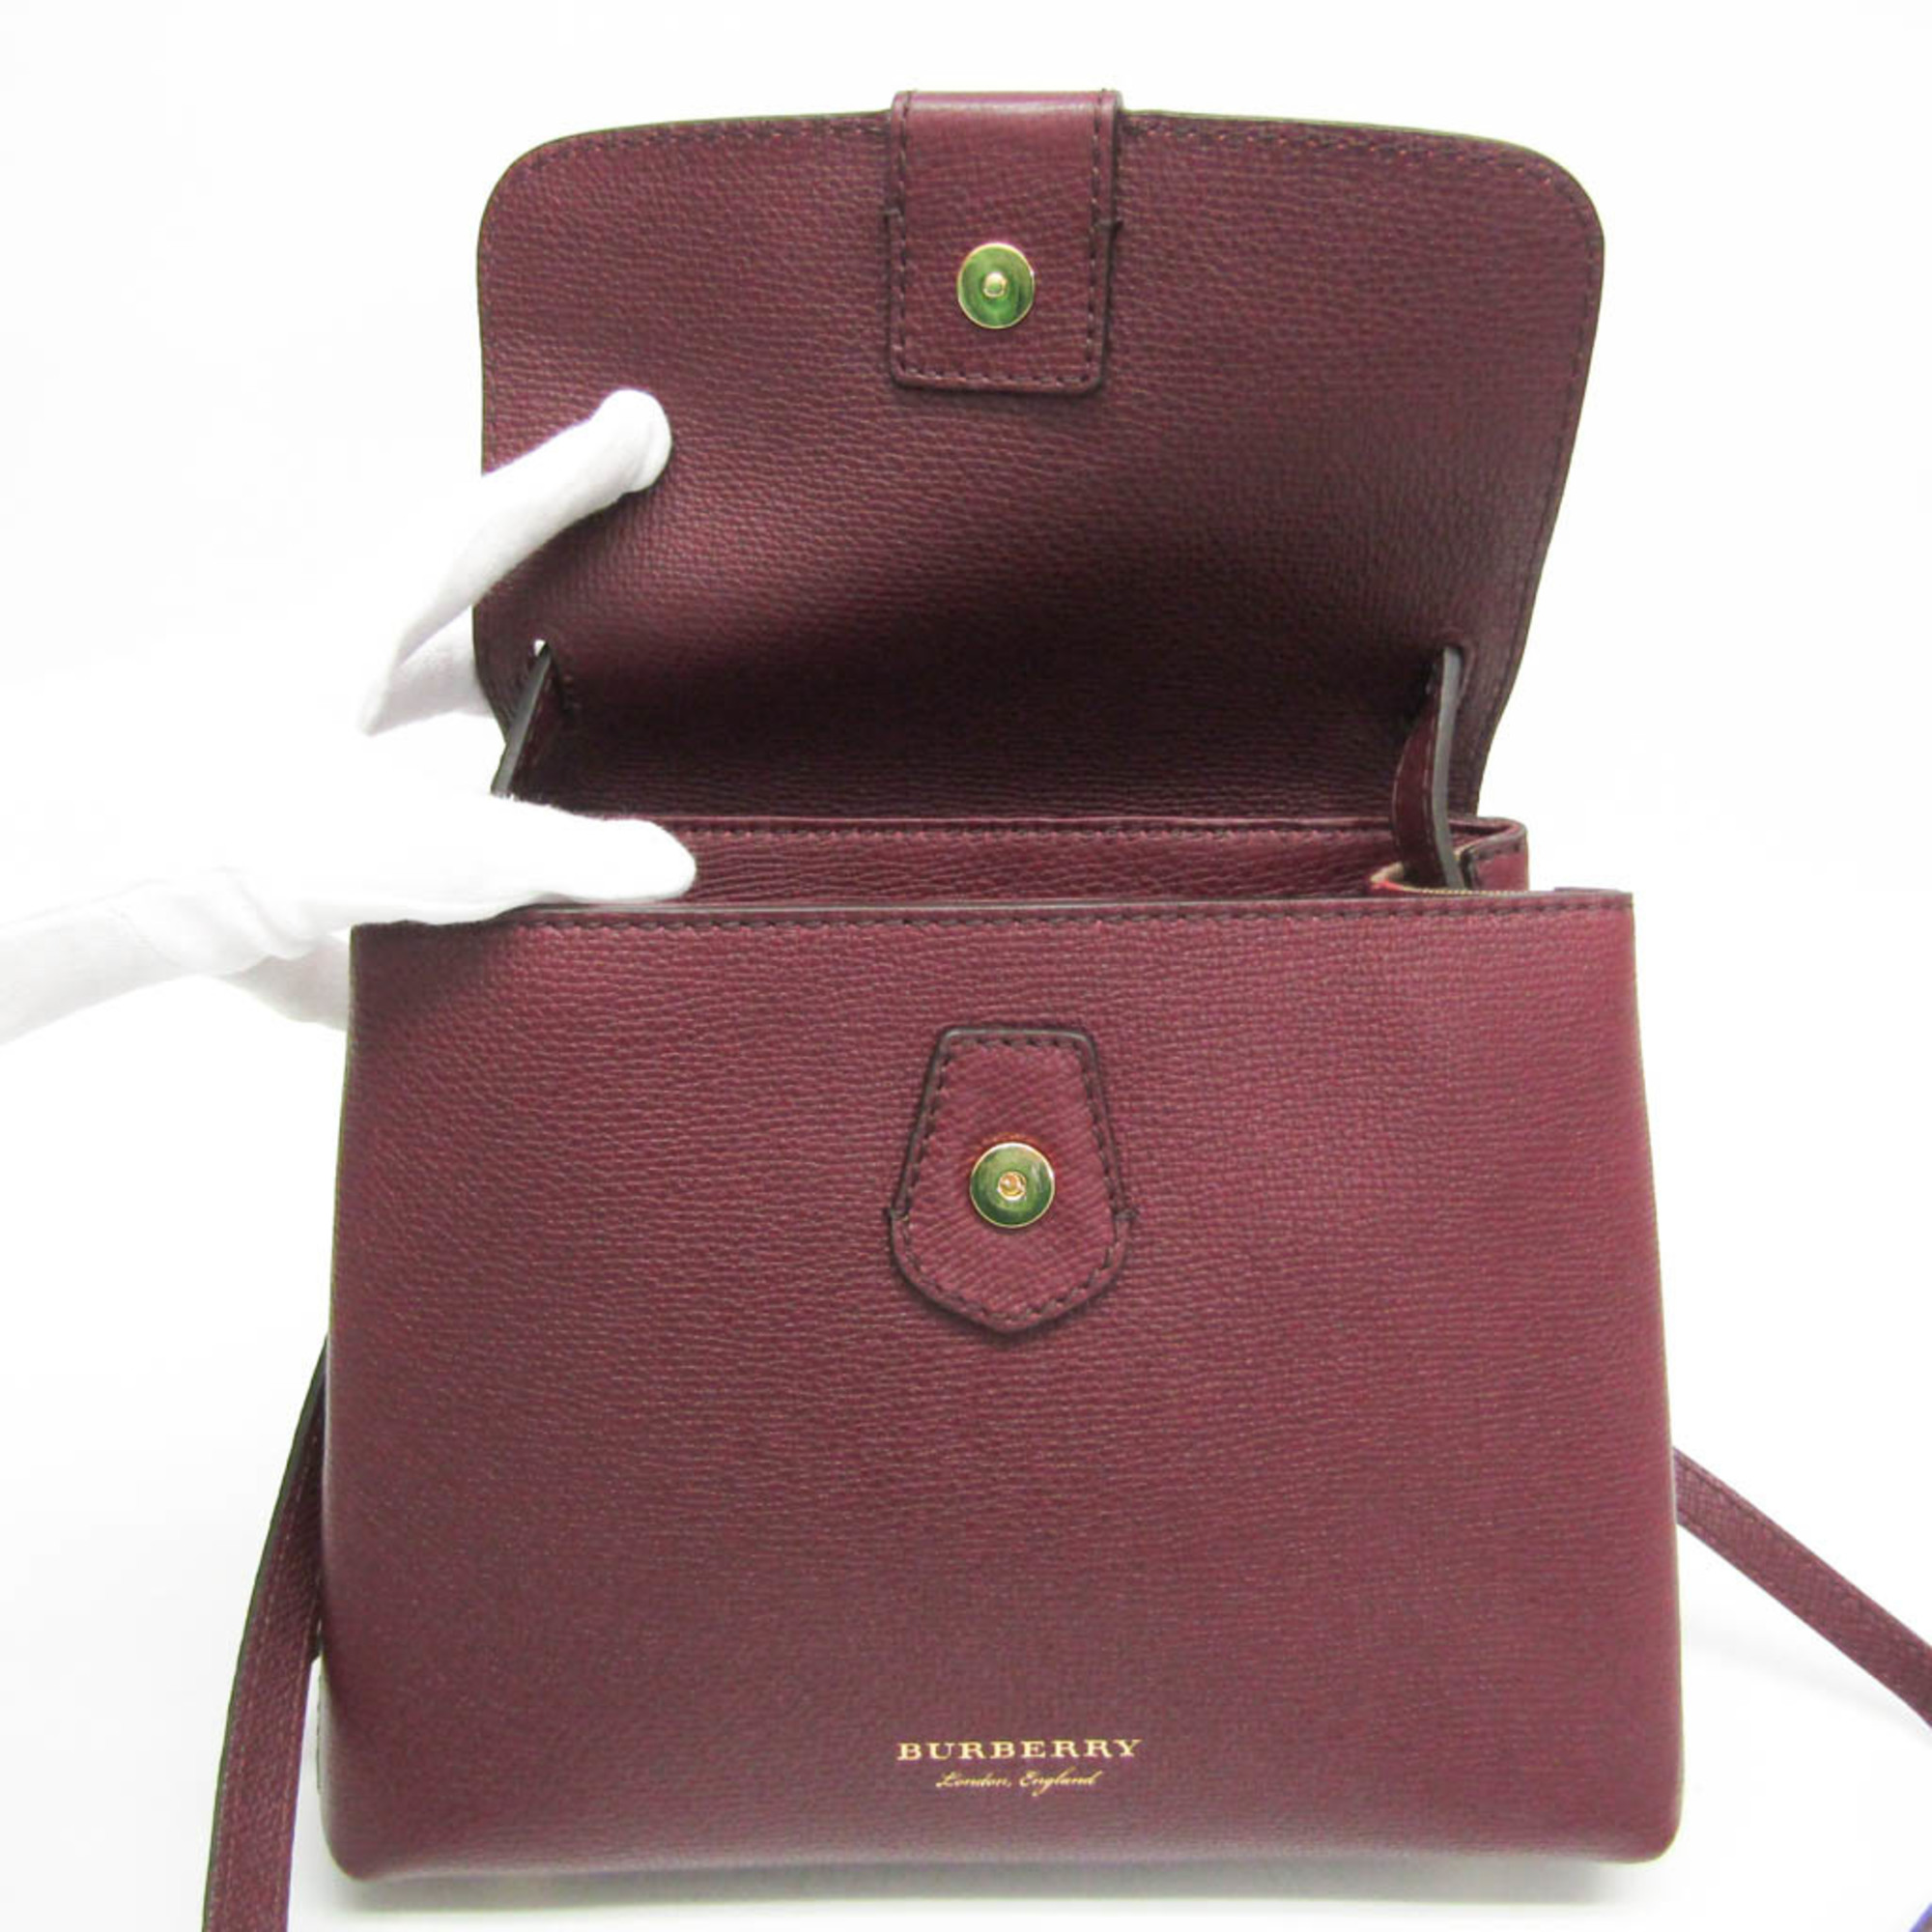 Burberry 4061170 Women's Leather Handbag,Shoulder Bag Bordeaux Brown